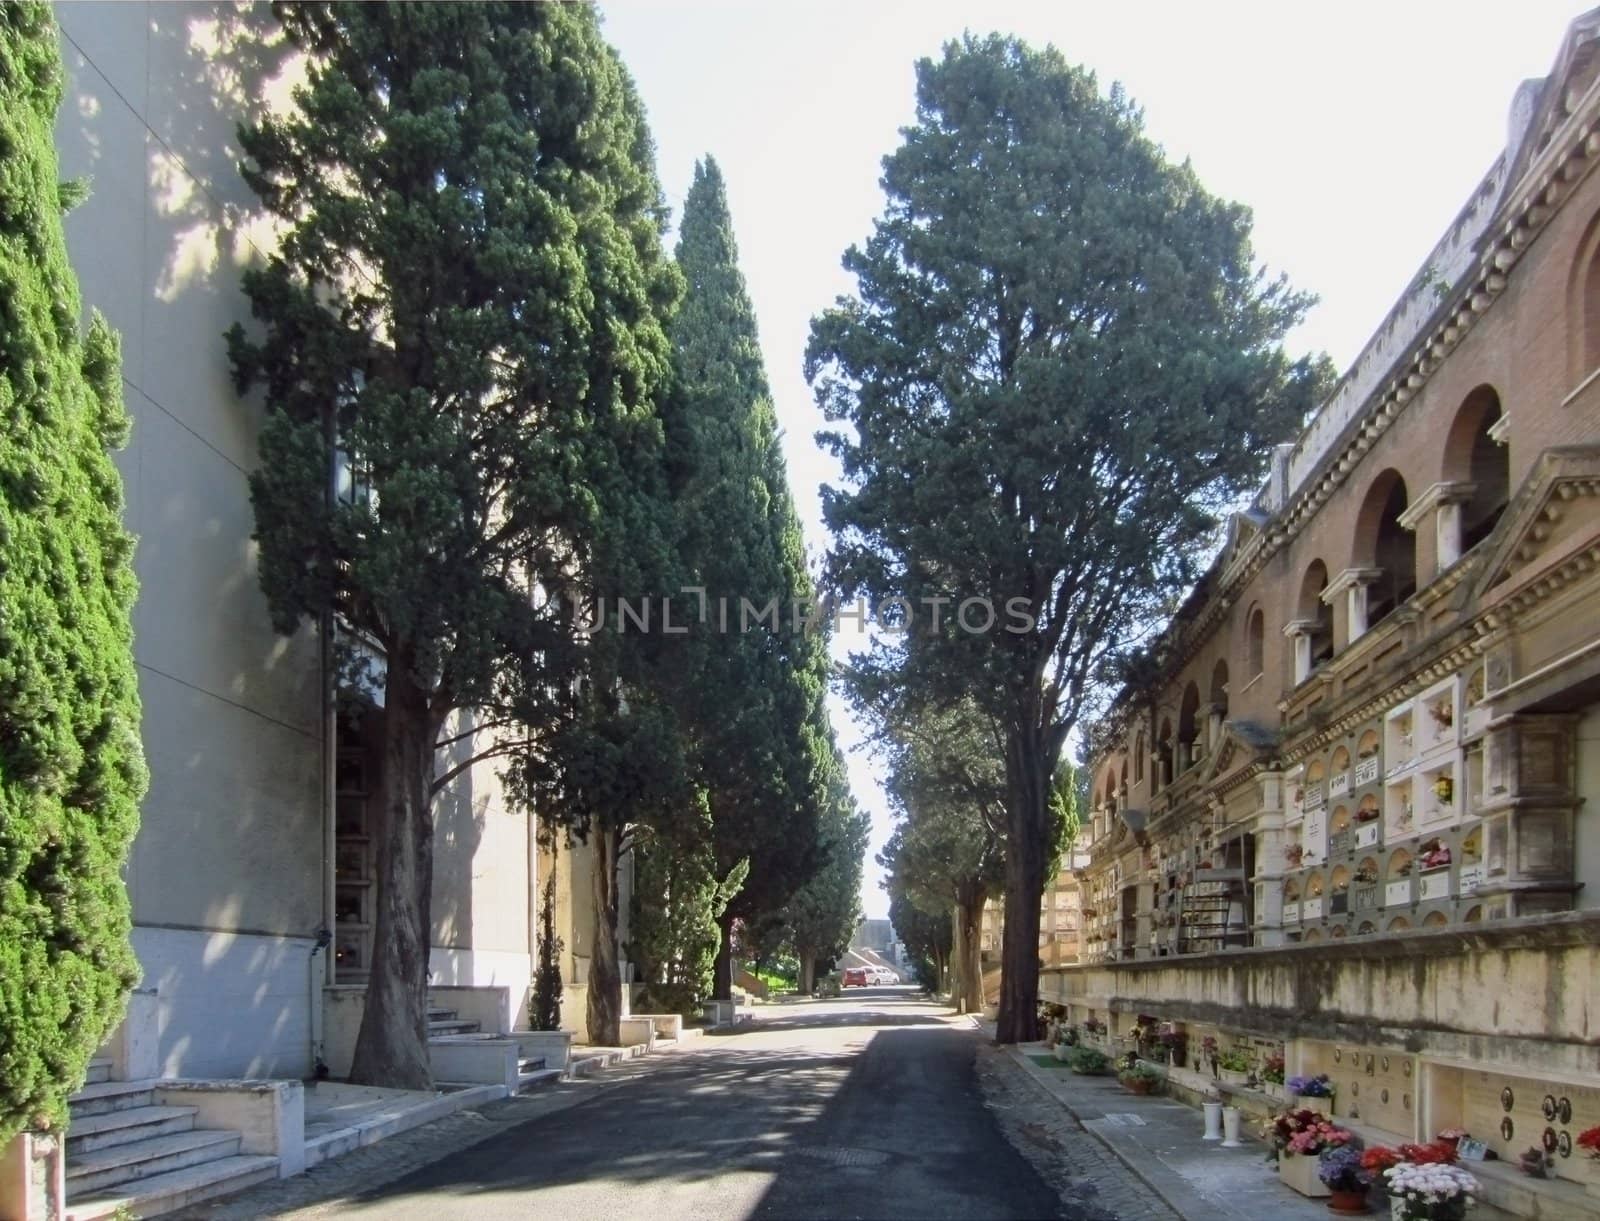 Cemetery, Rome, Italy                            